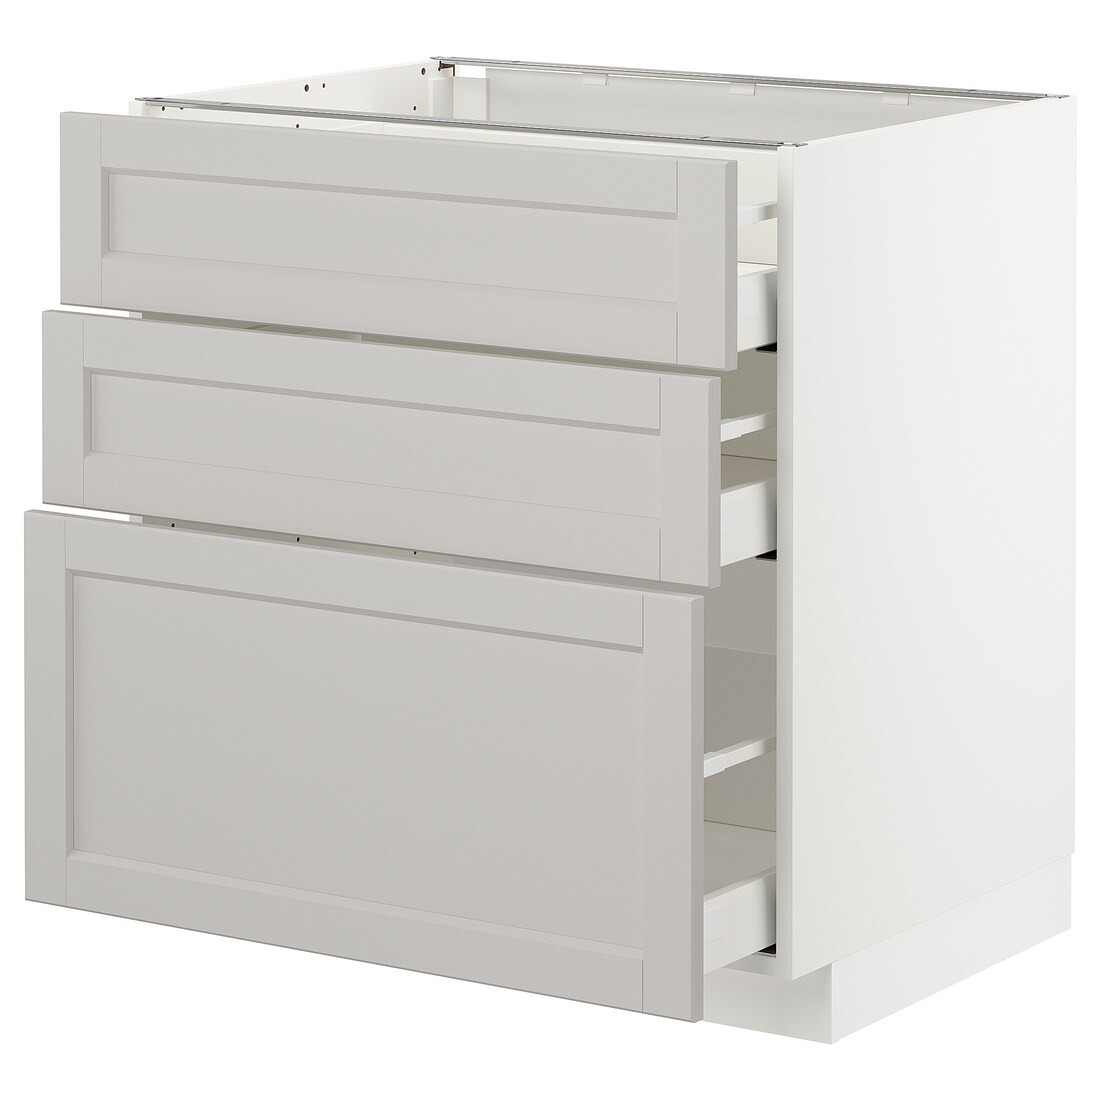 IKEA METOD МЕТОД / MAXIMERA МАКСИМЕРА Напольный шкаф с 3 ящиками, белый / Lerhyttan светло-серый, 80x60 см 99274232 992.742.32